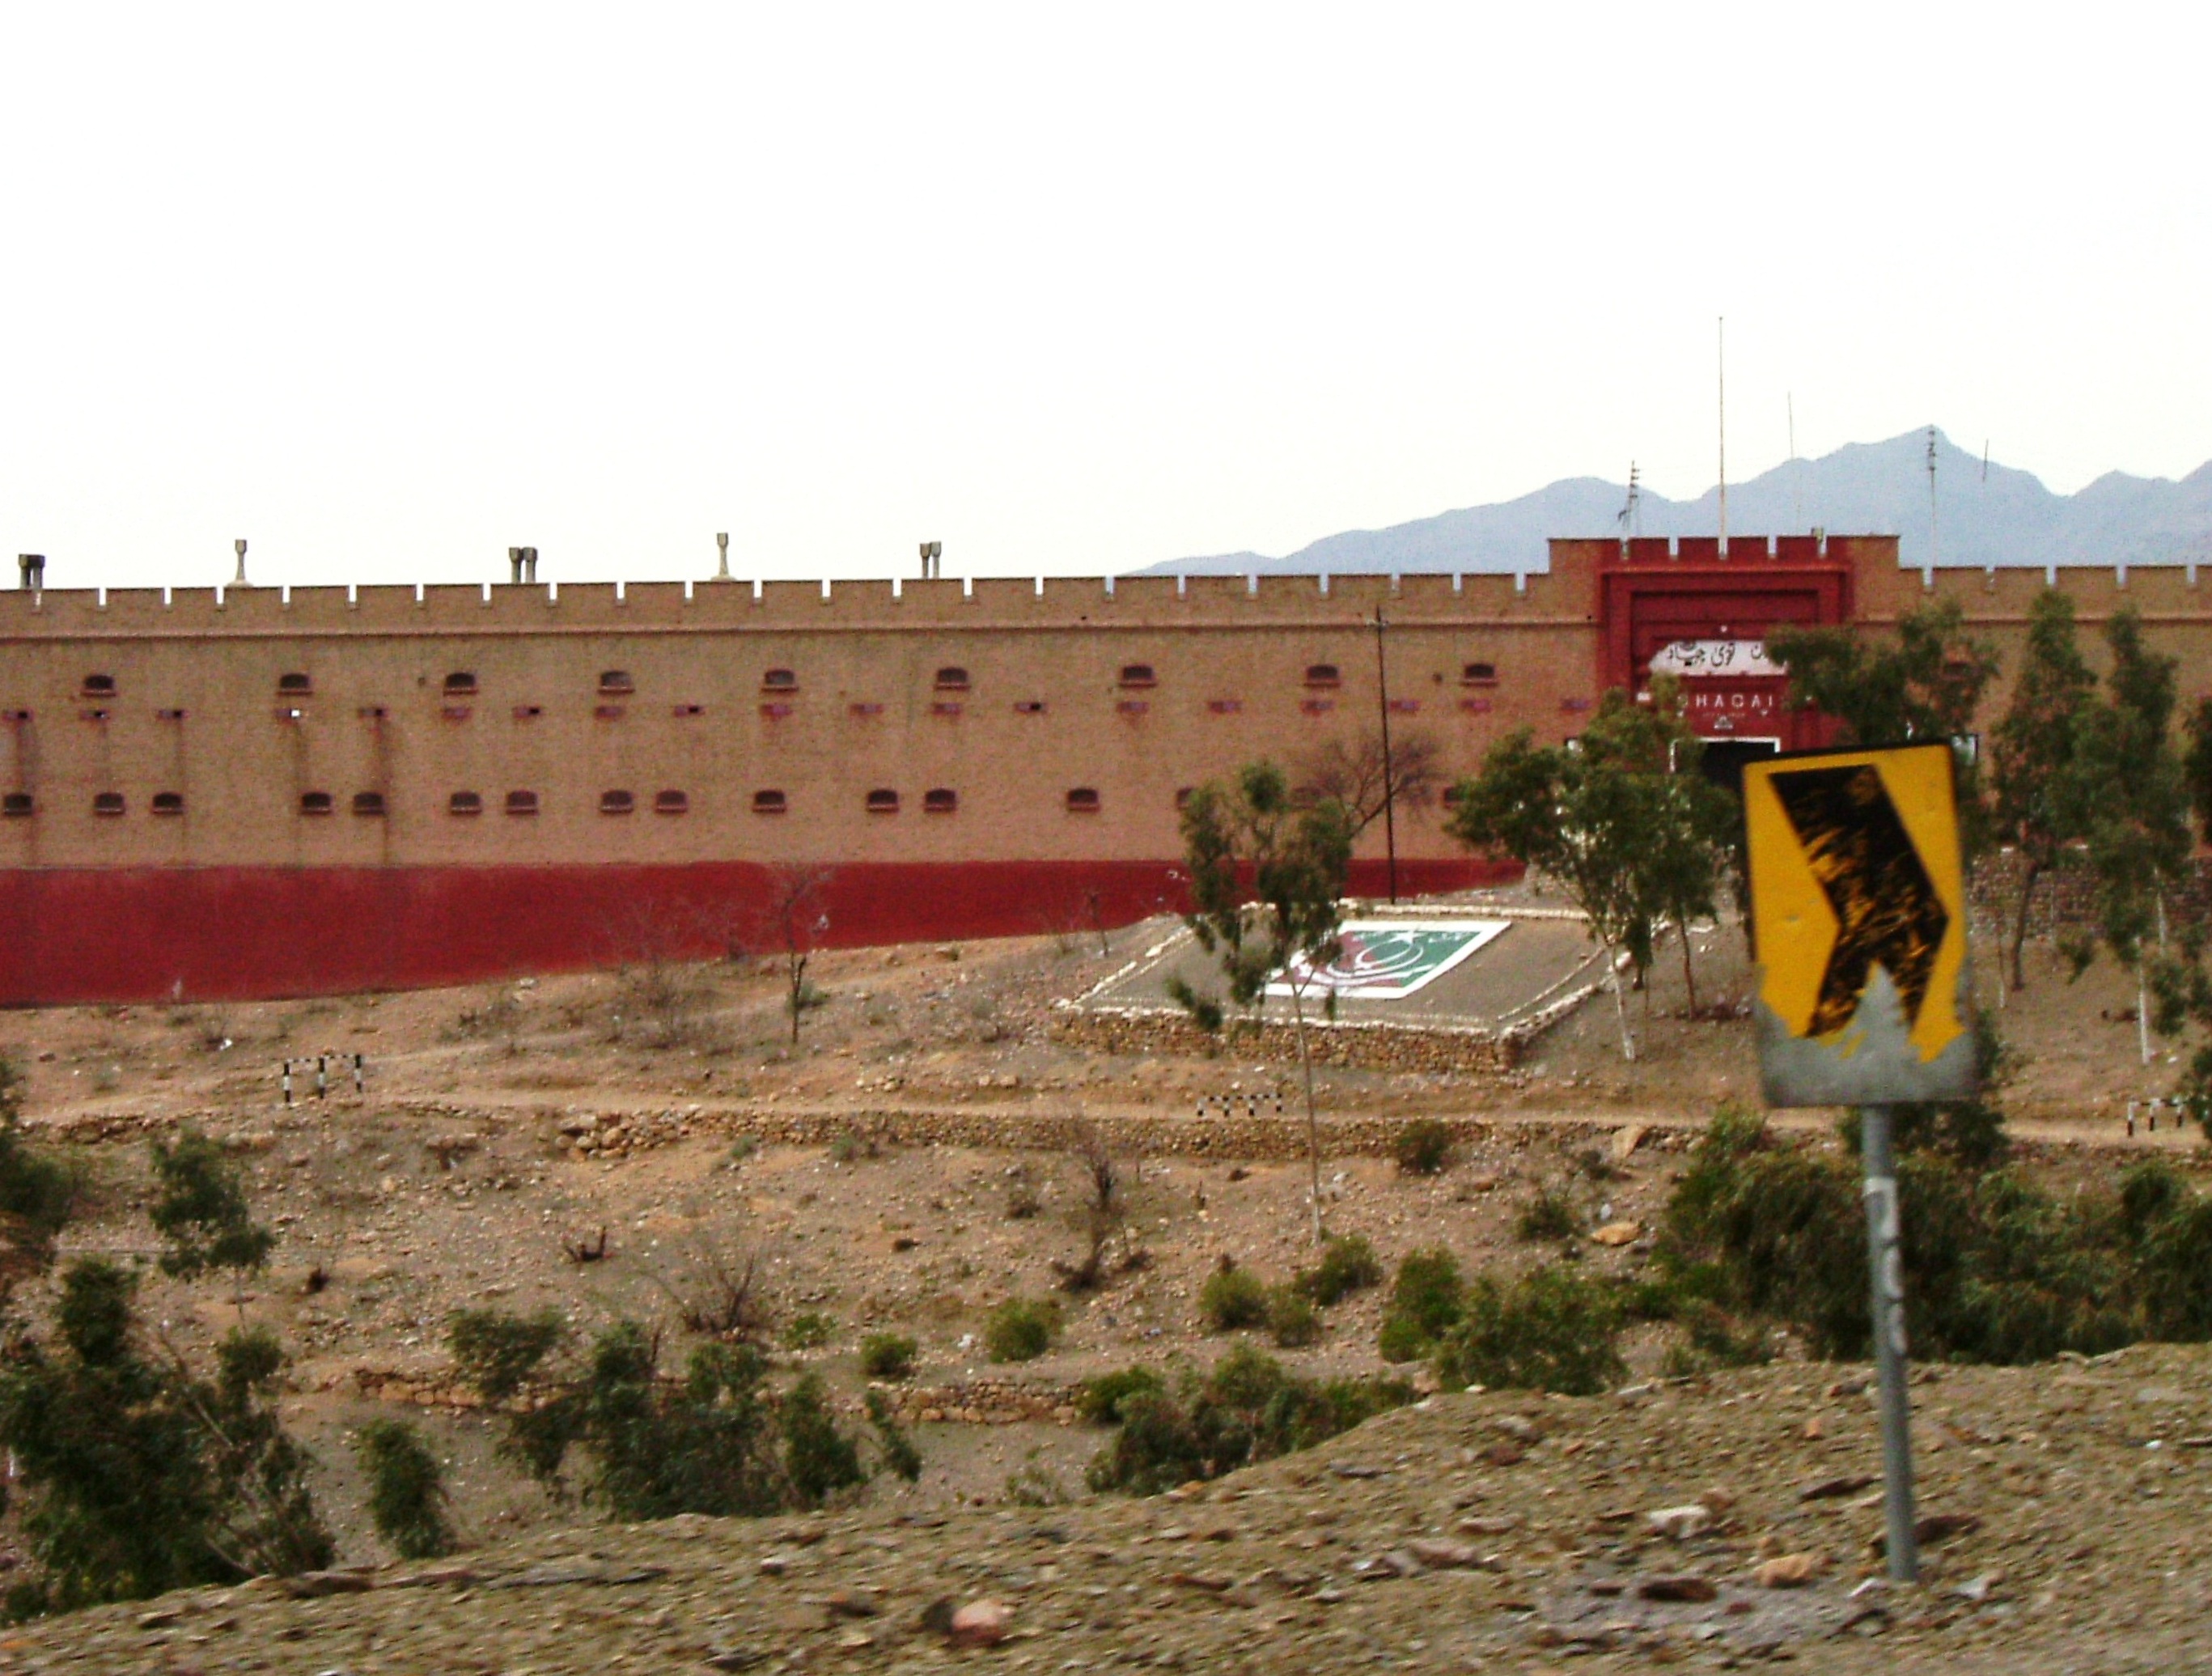 Shagai_Fort_entrance_-_panoramio.jpg